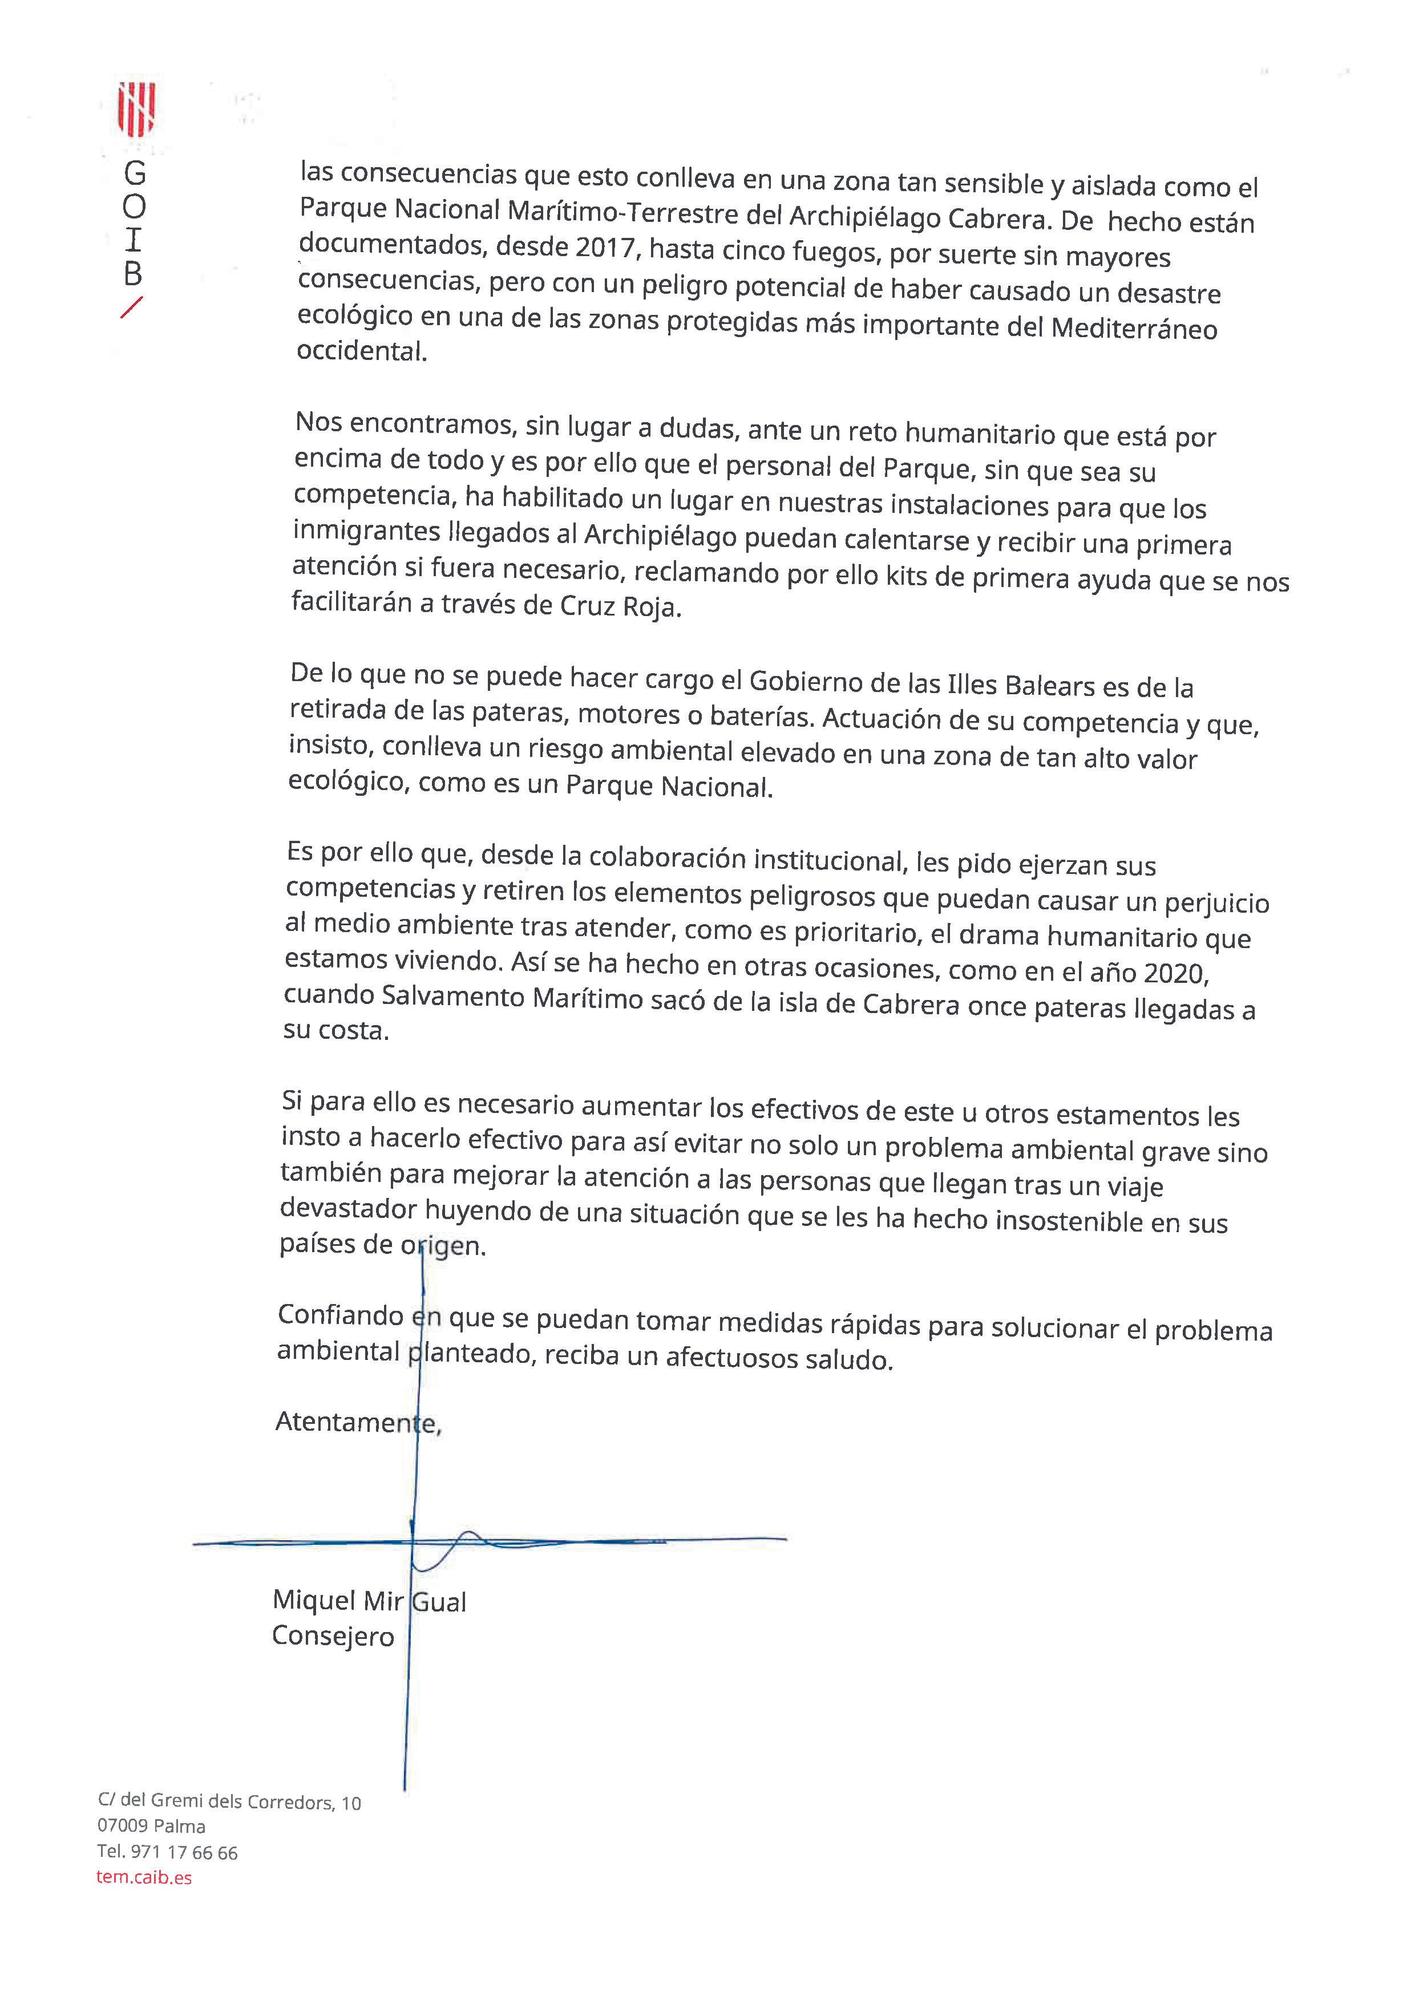 La carta que el coseller Mir envió a los ministros Marlaska y Sánchez.